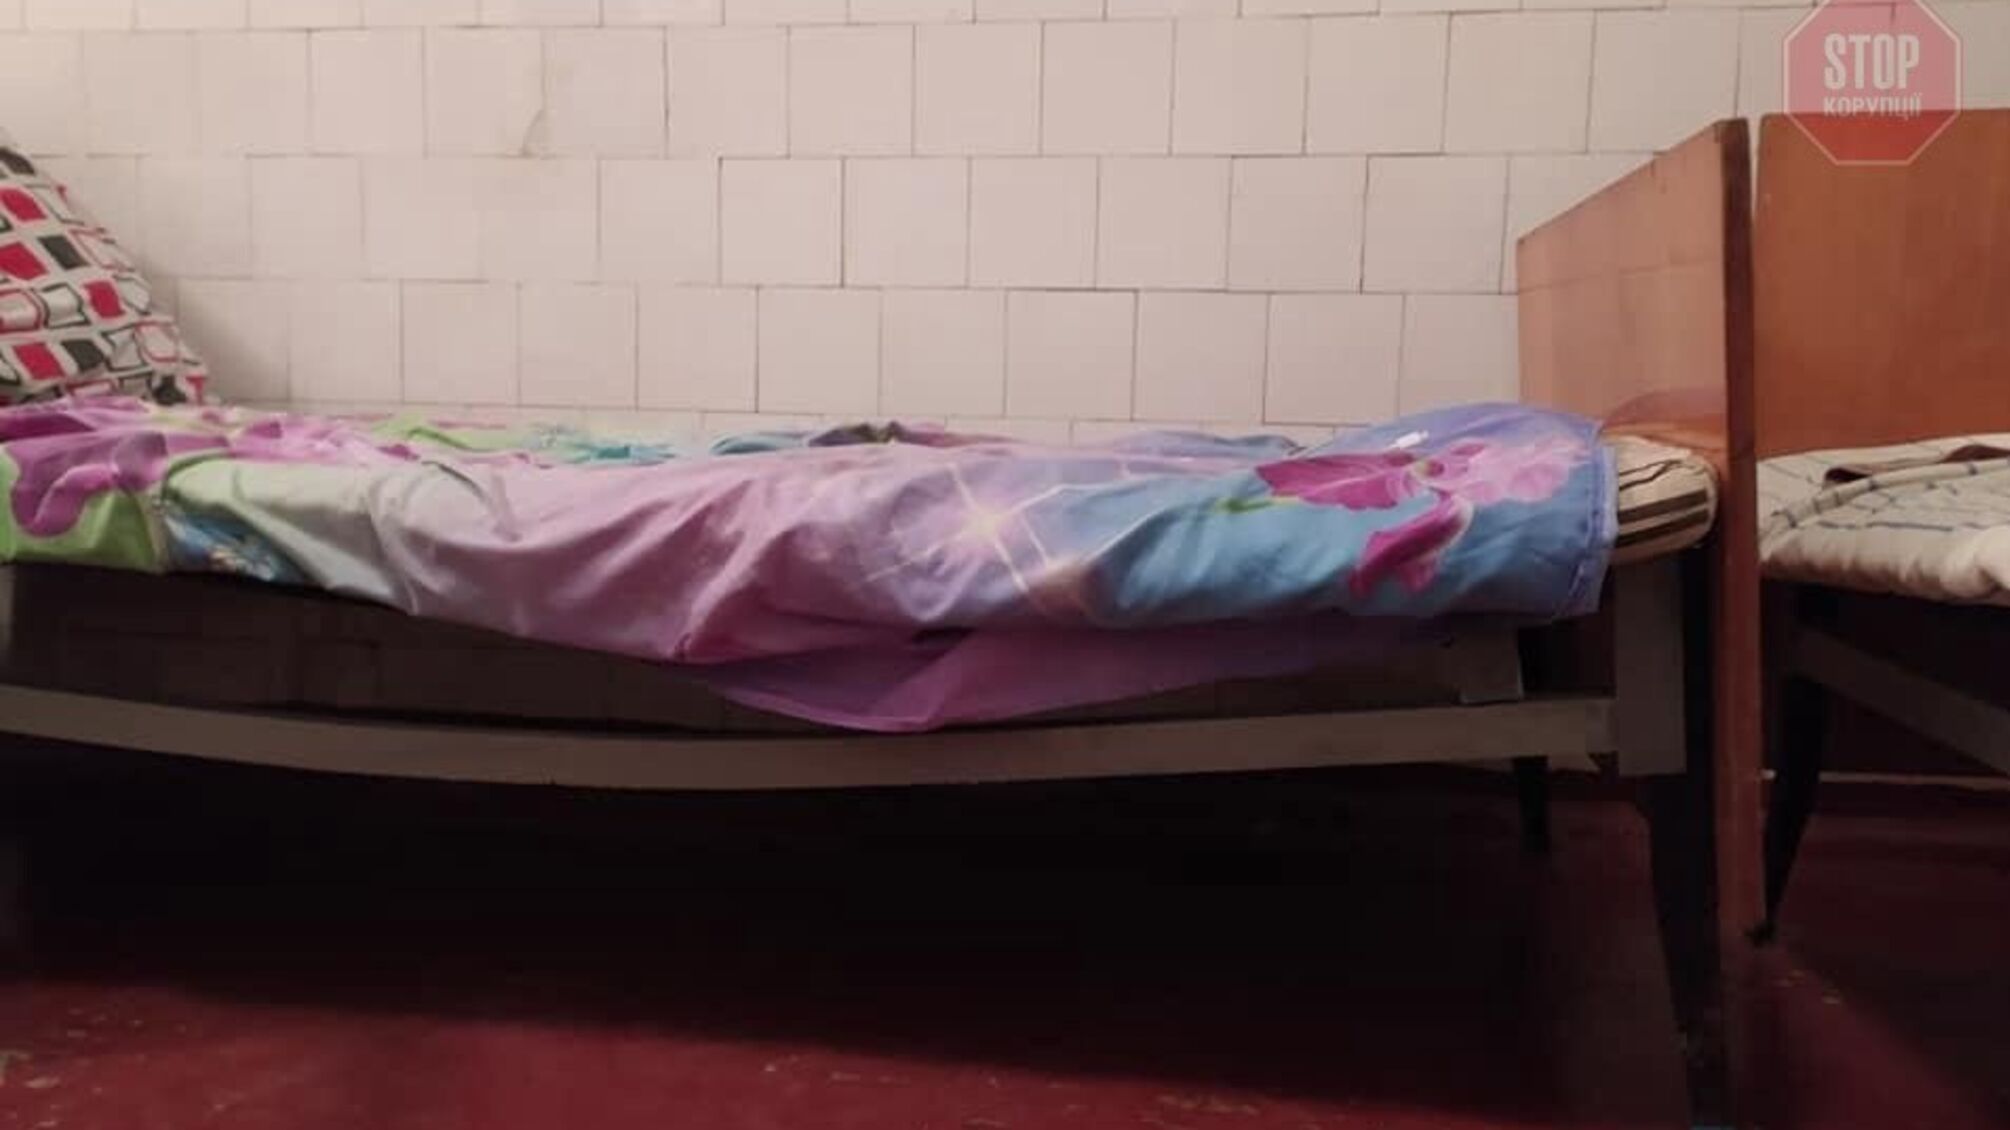 'Матрасы записаны, забиты': жителька Днепра показал ужасные условия COVID-больницы для детей (фото)